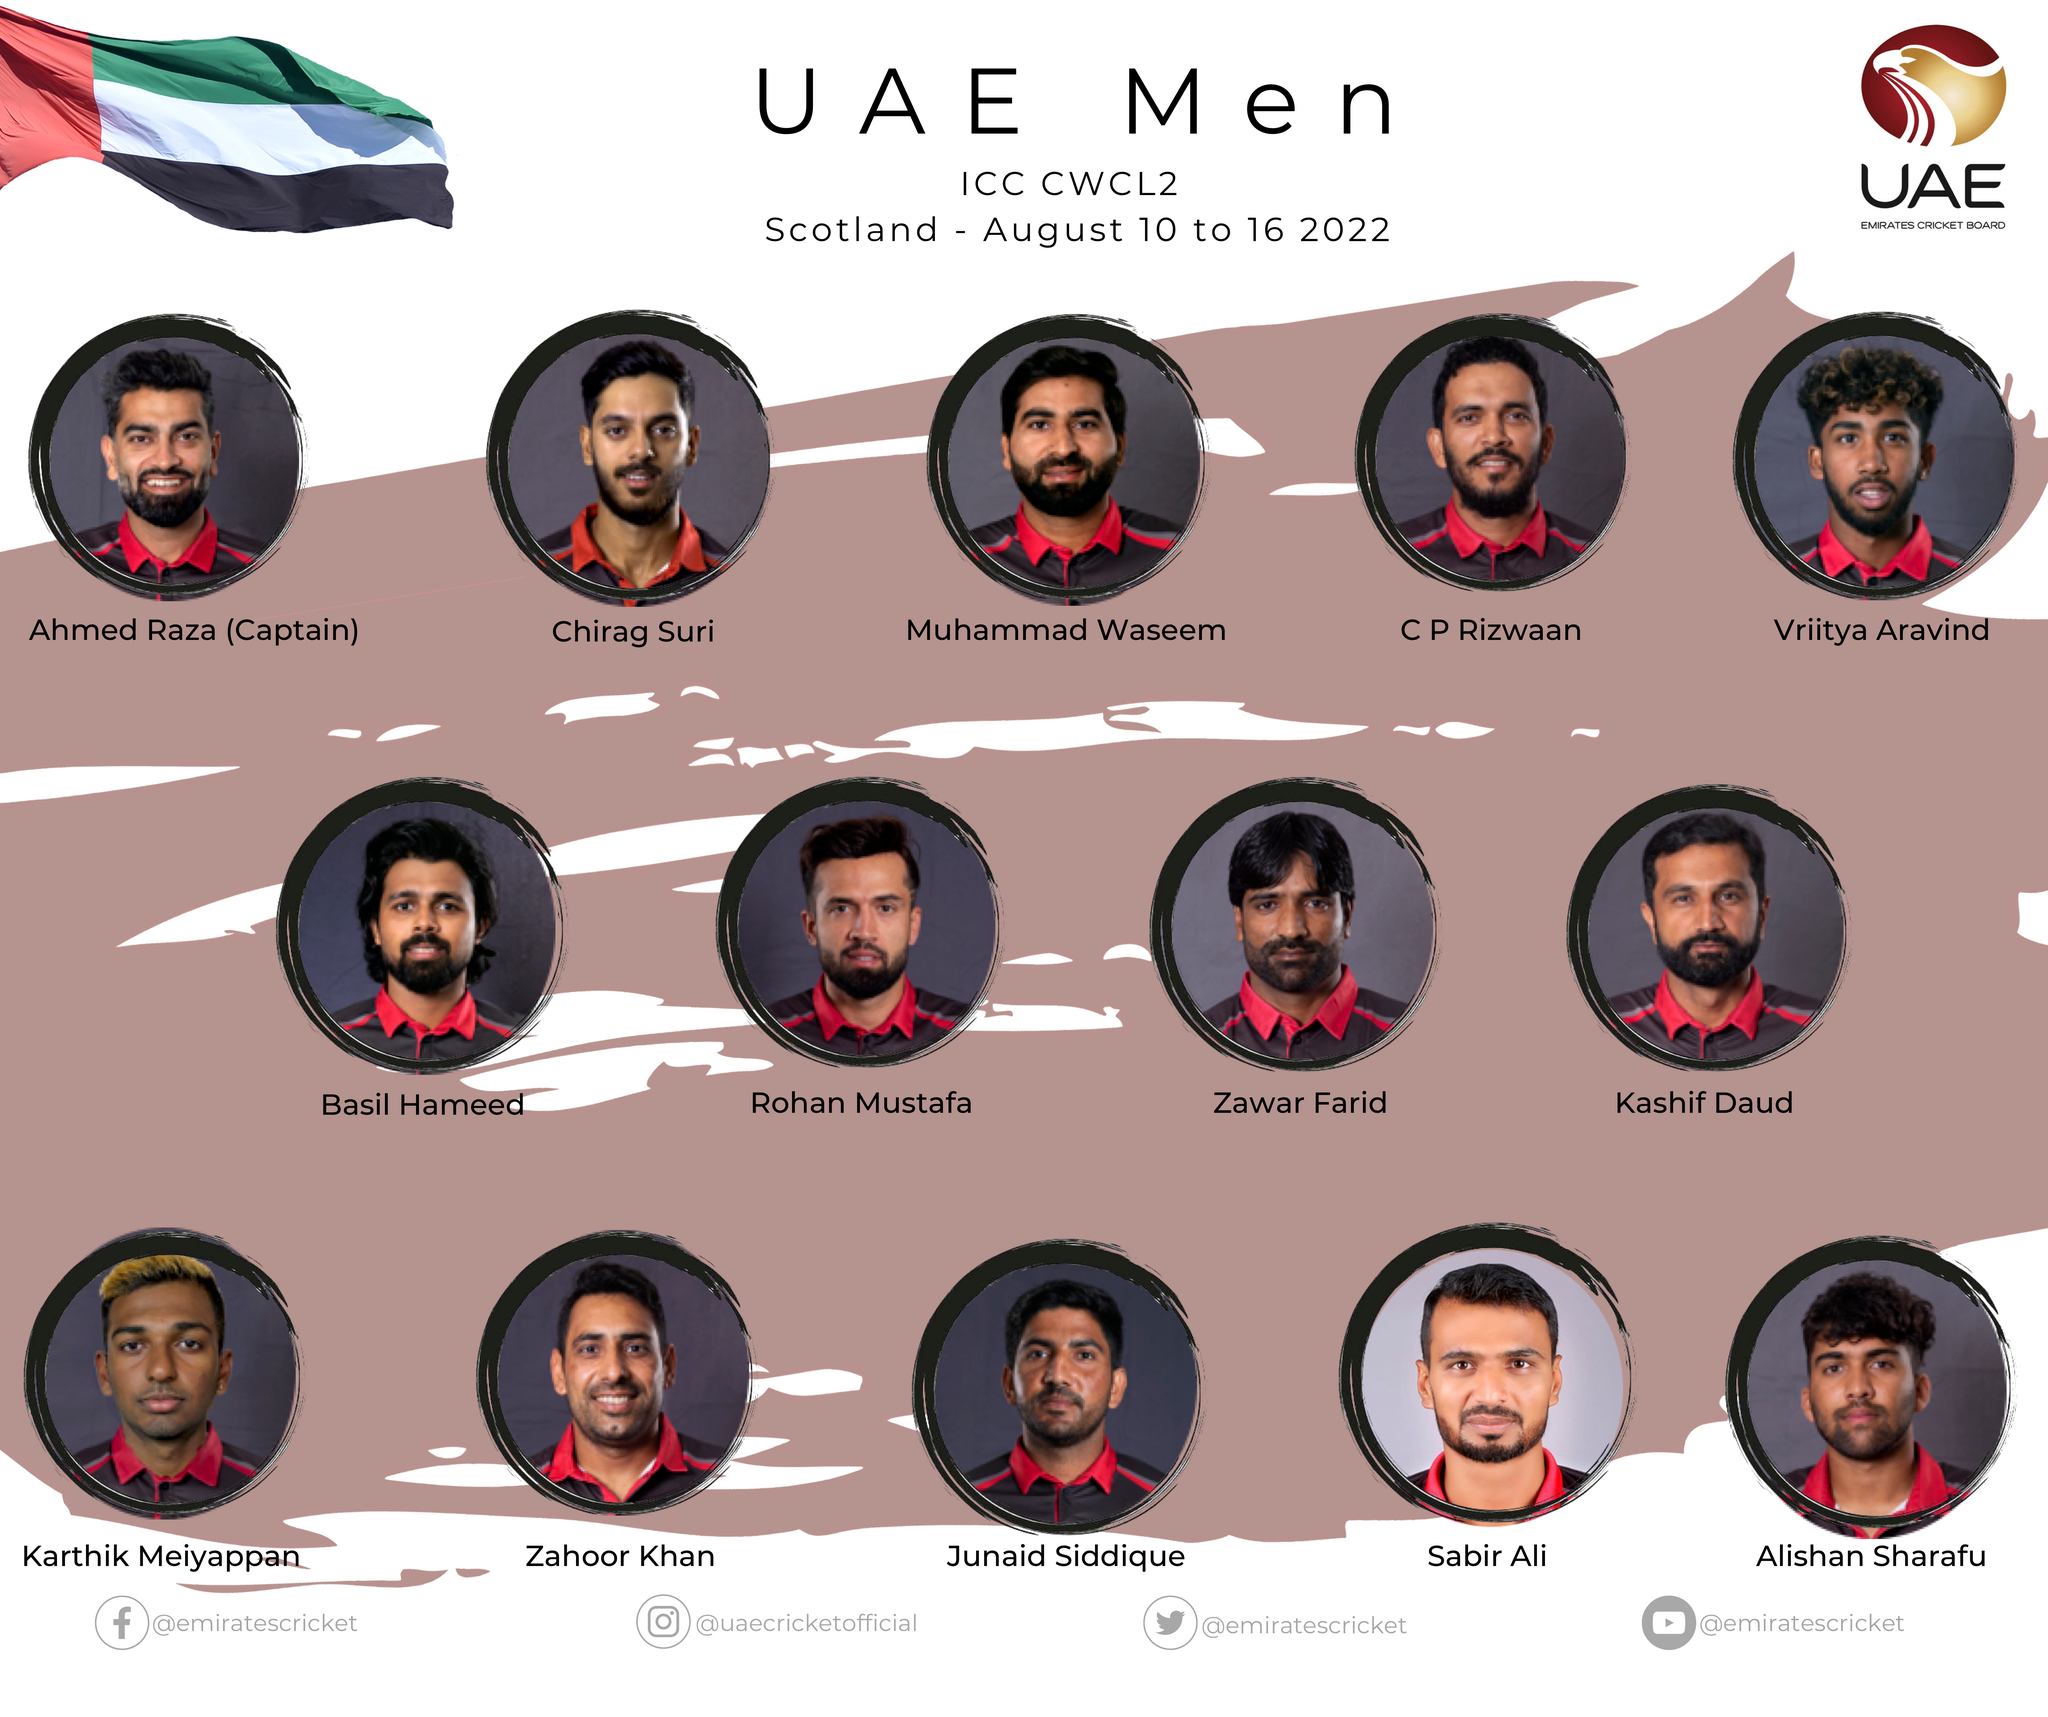 تنبض لعبة الكريكيت الإماراتية بالإثارة مع استئناف المباريات بعد الوباء